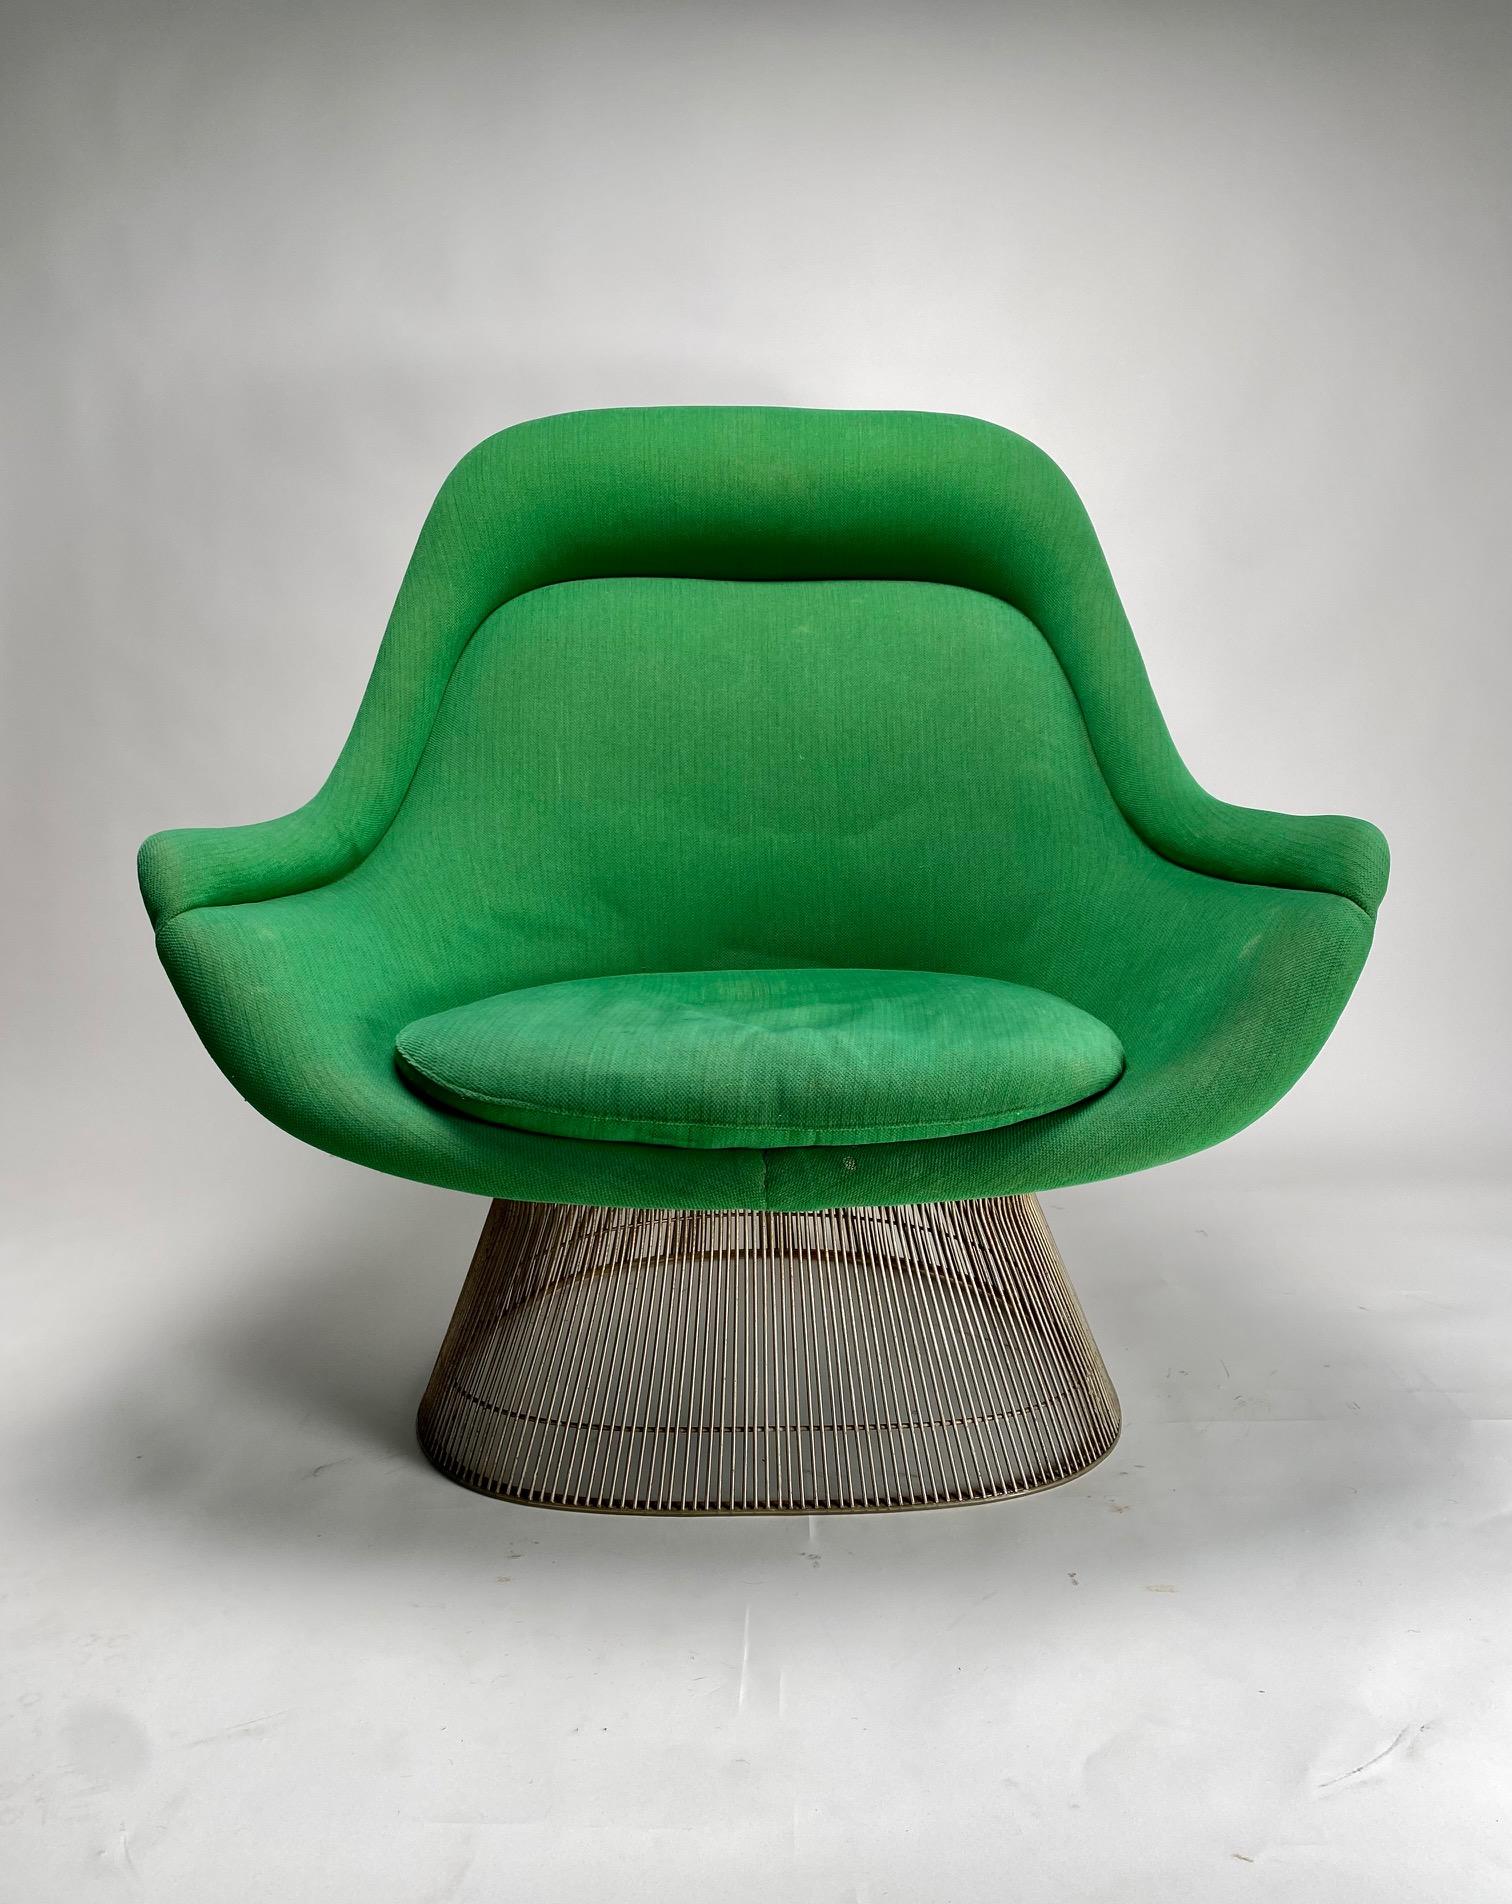 Vintage Warren Platner Easy Chair (Model 1705 ; aka Easy Lounge Chair) 

Il s'agit de l'un des modèles les plus emblématiques et représentatifs du célèbre architecte et designer américain Warren Platner, un fauteuil à fort impact scénographique, aux